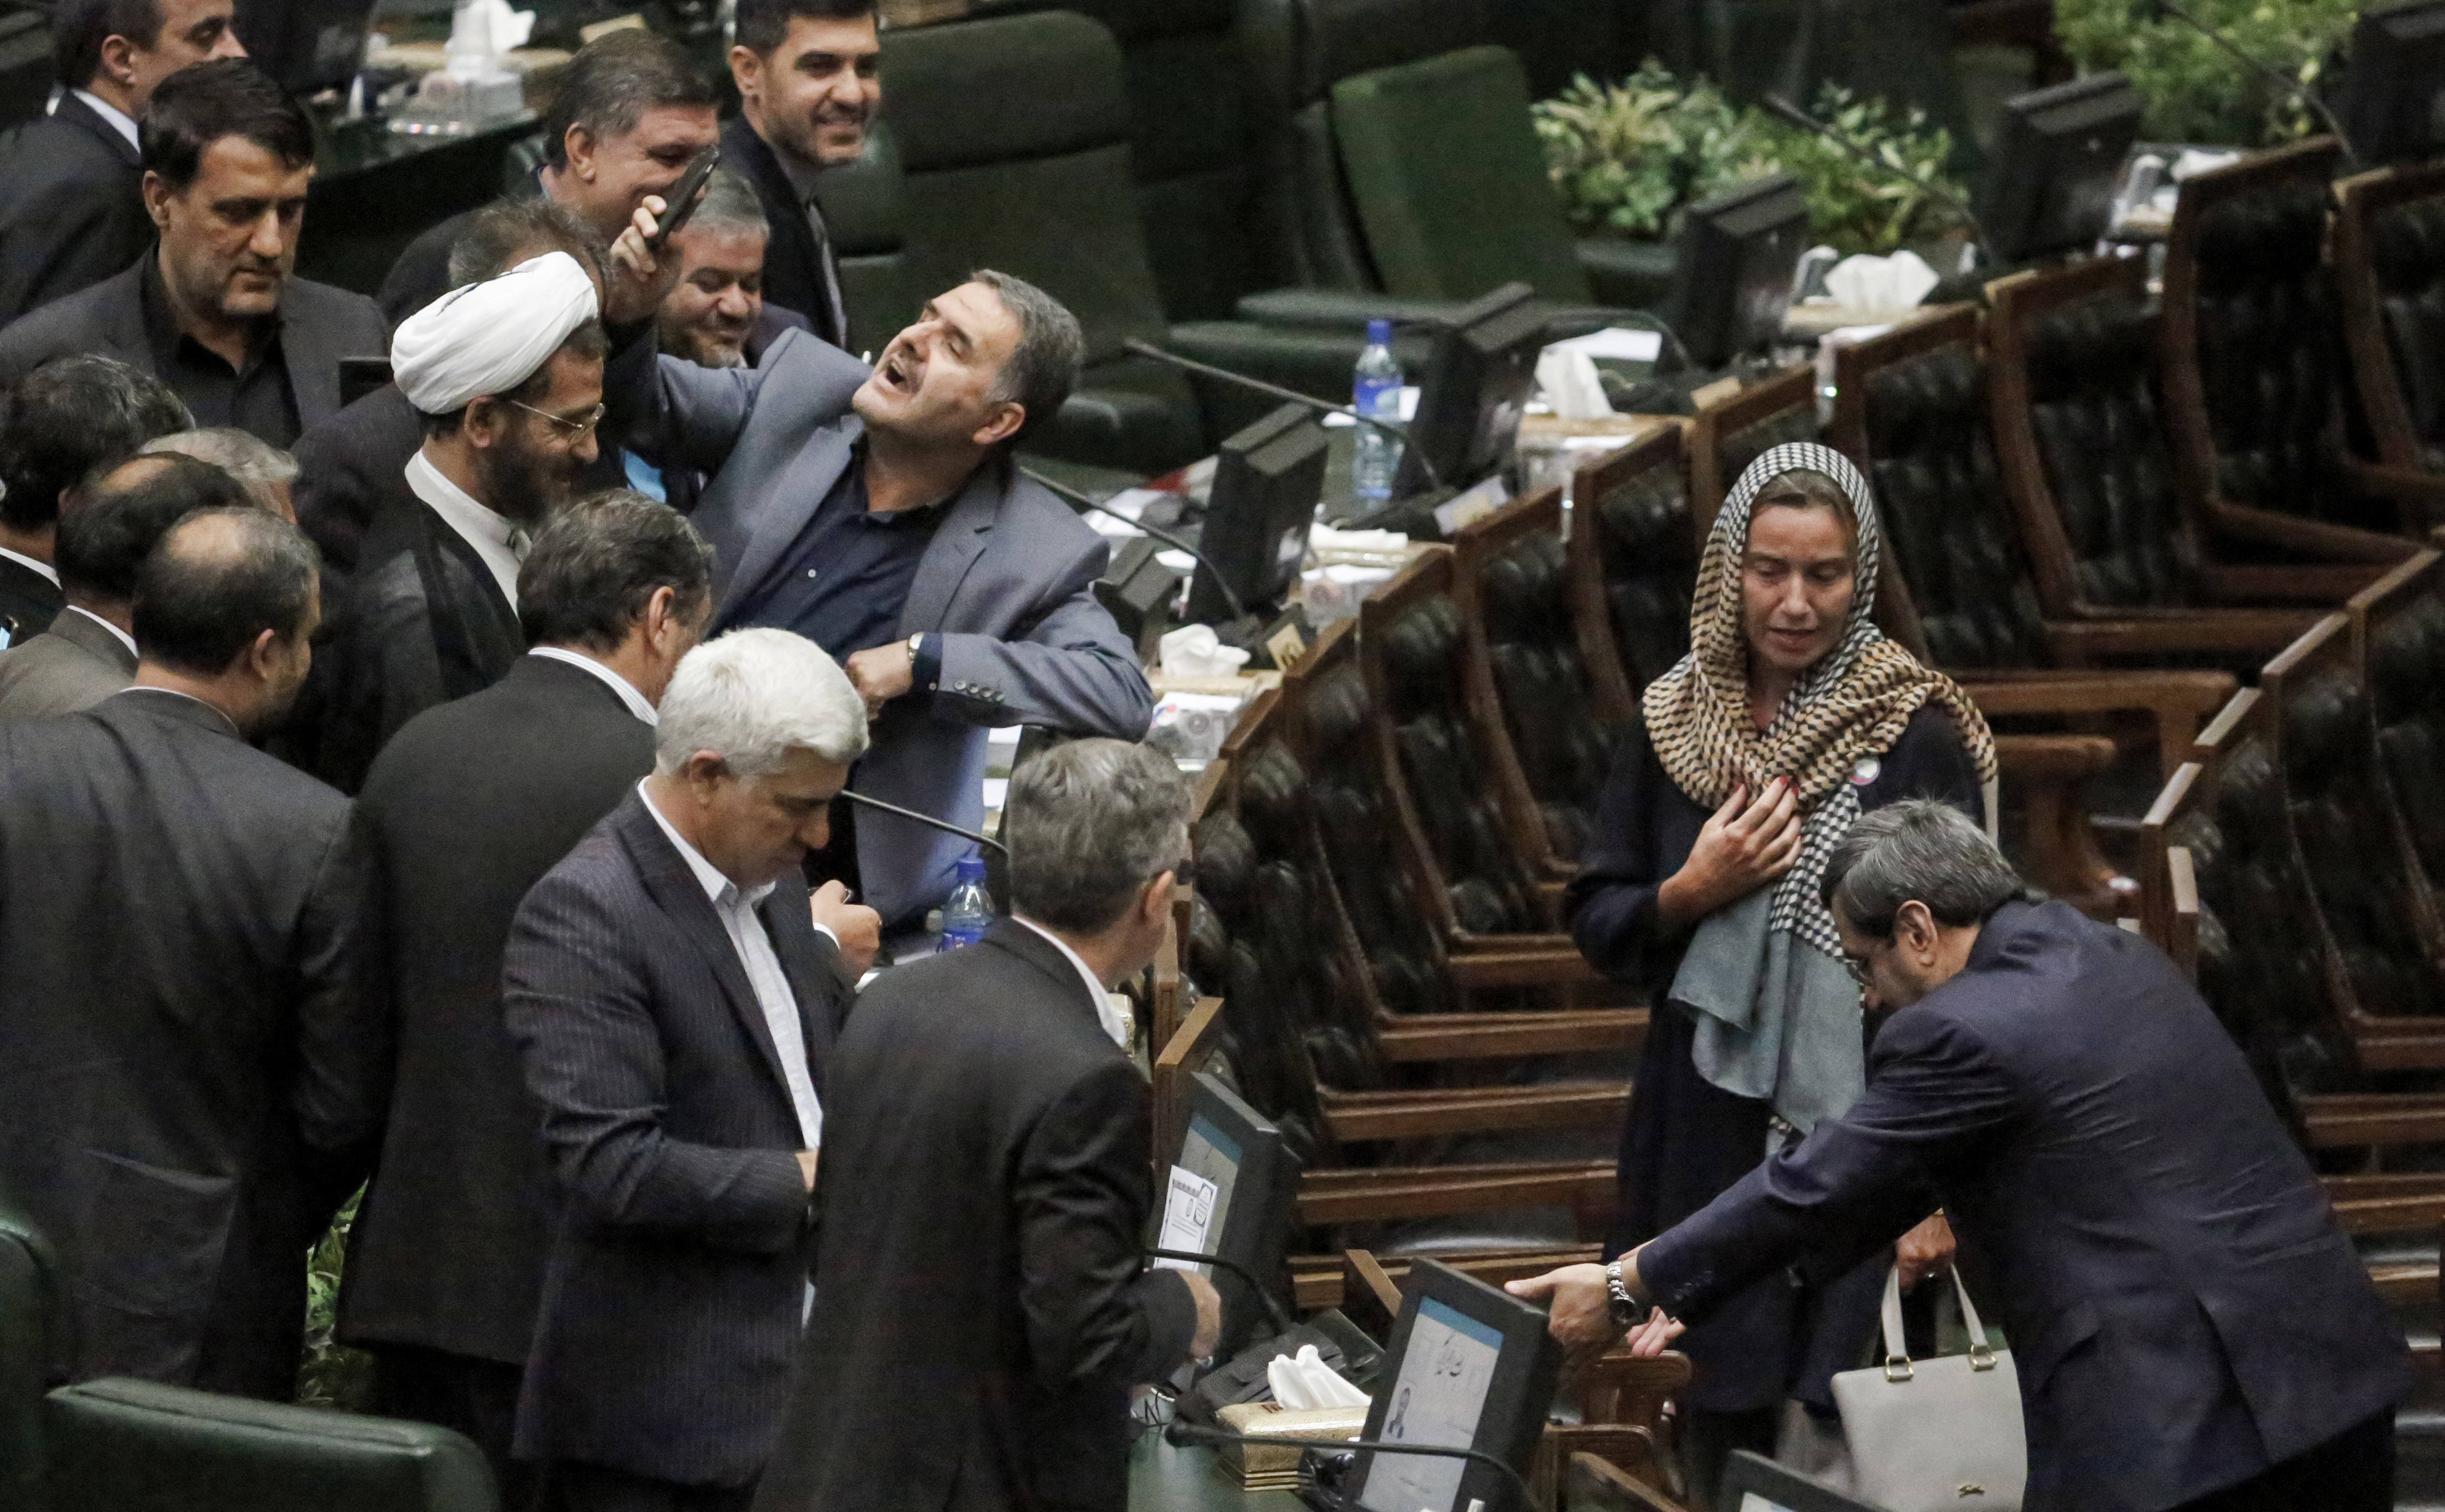 Teljesen bezsongtak az iráni parlamenti képviselők attól, hogy nő került a terembe